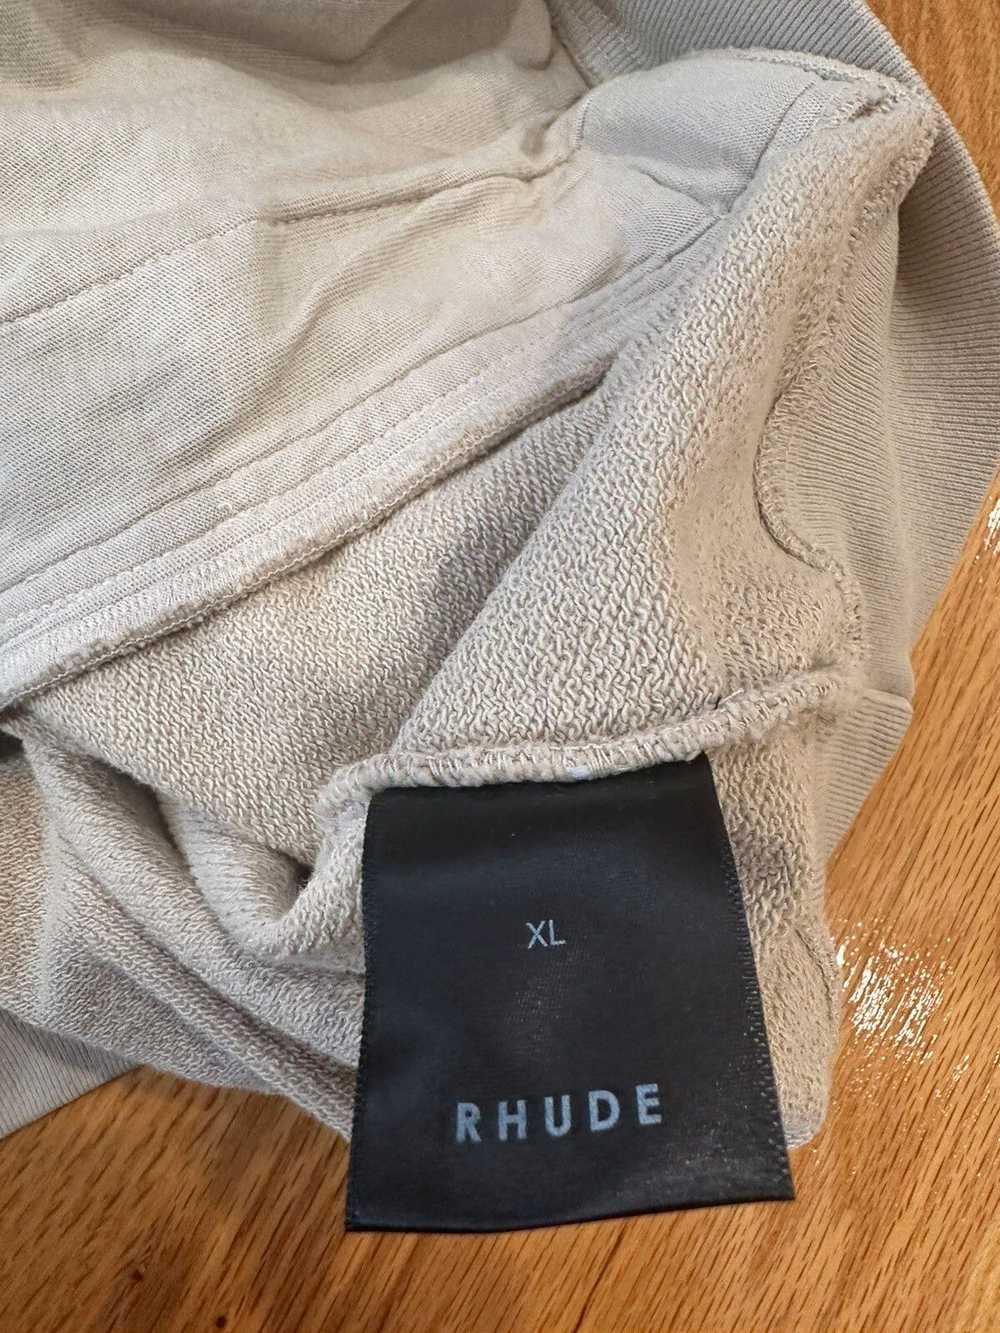 Rhude Third Half Zip Sweater - image 4